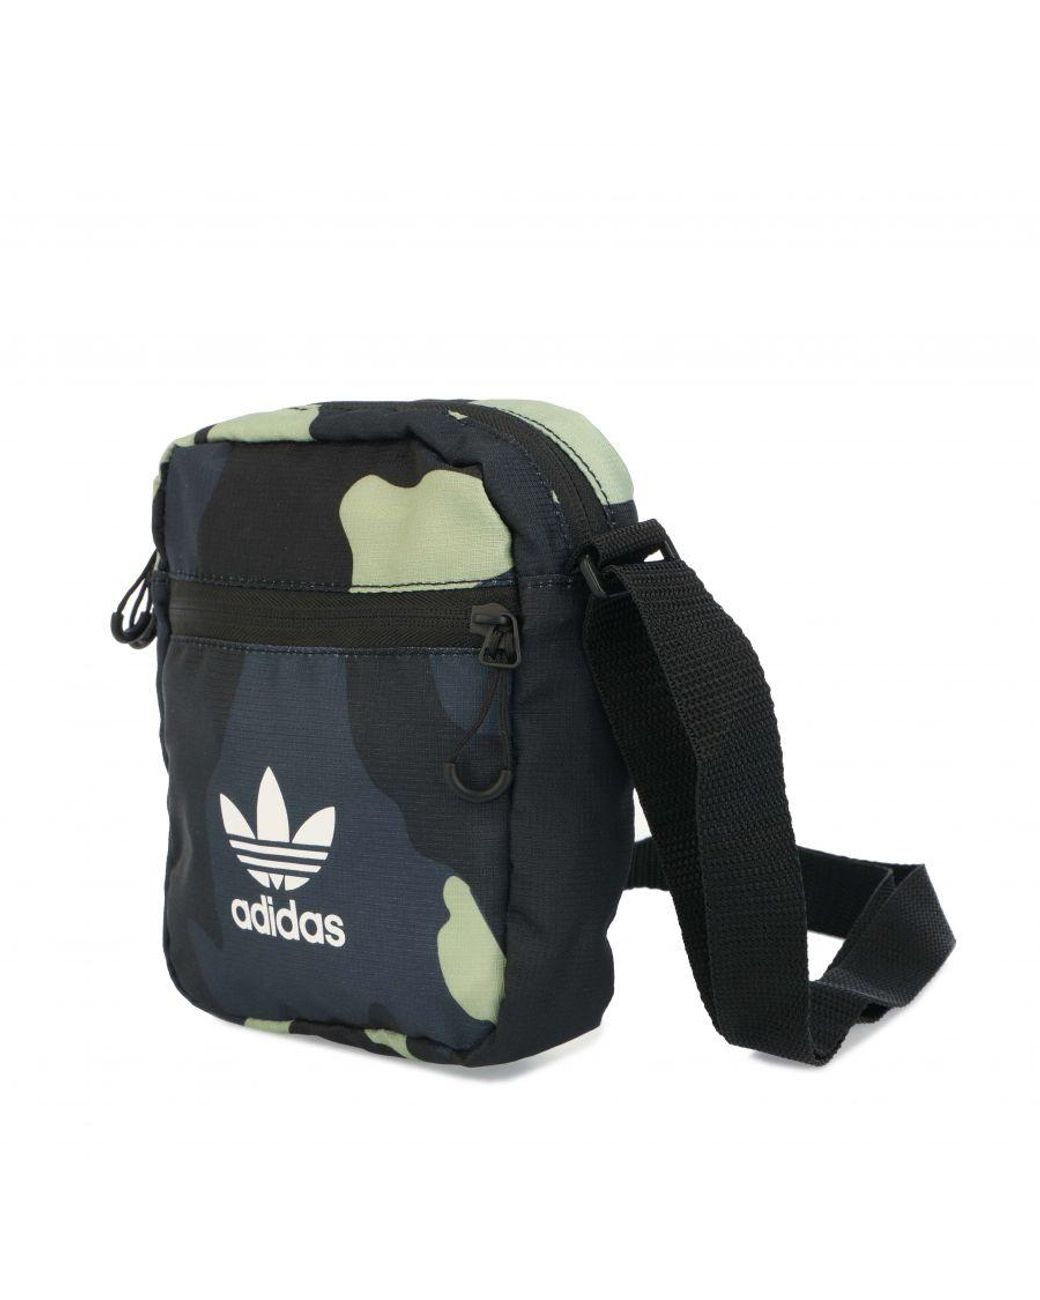 Adidas Originals Utility Festival Crossbody Bag Rain Camo Ink Blue OS for  sale online | eBay